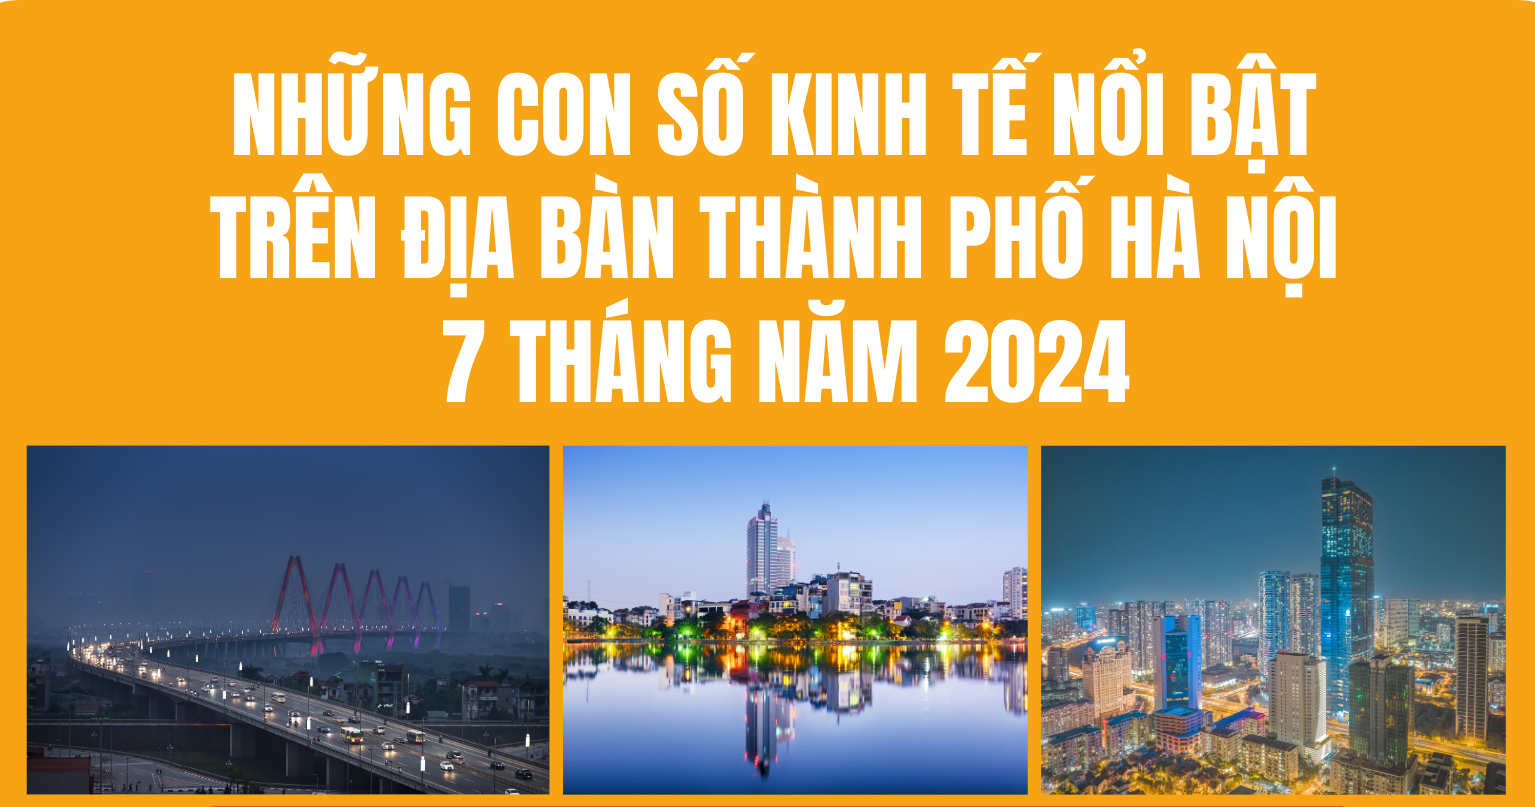 Những con số kinh tế nổi bật trên địa bàn thành phố Hà Nội 7 tháng năm 2024